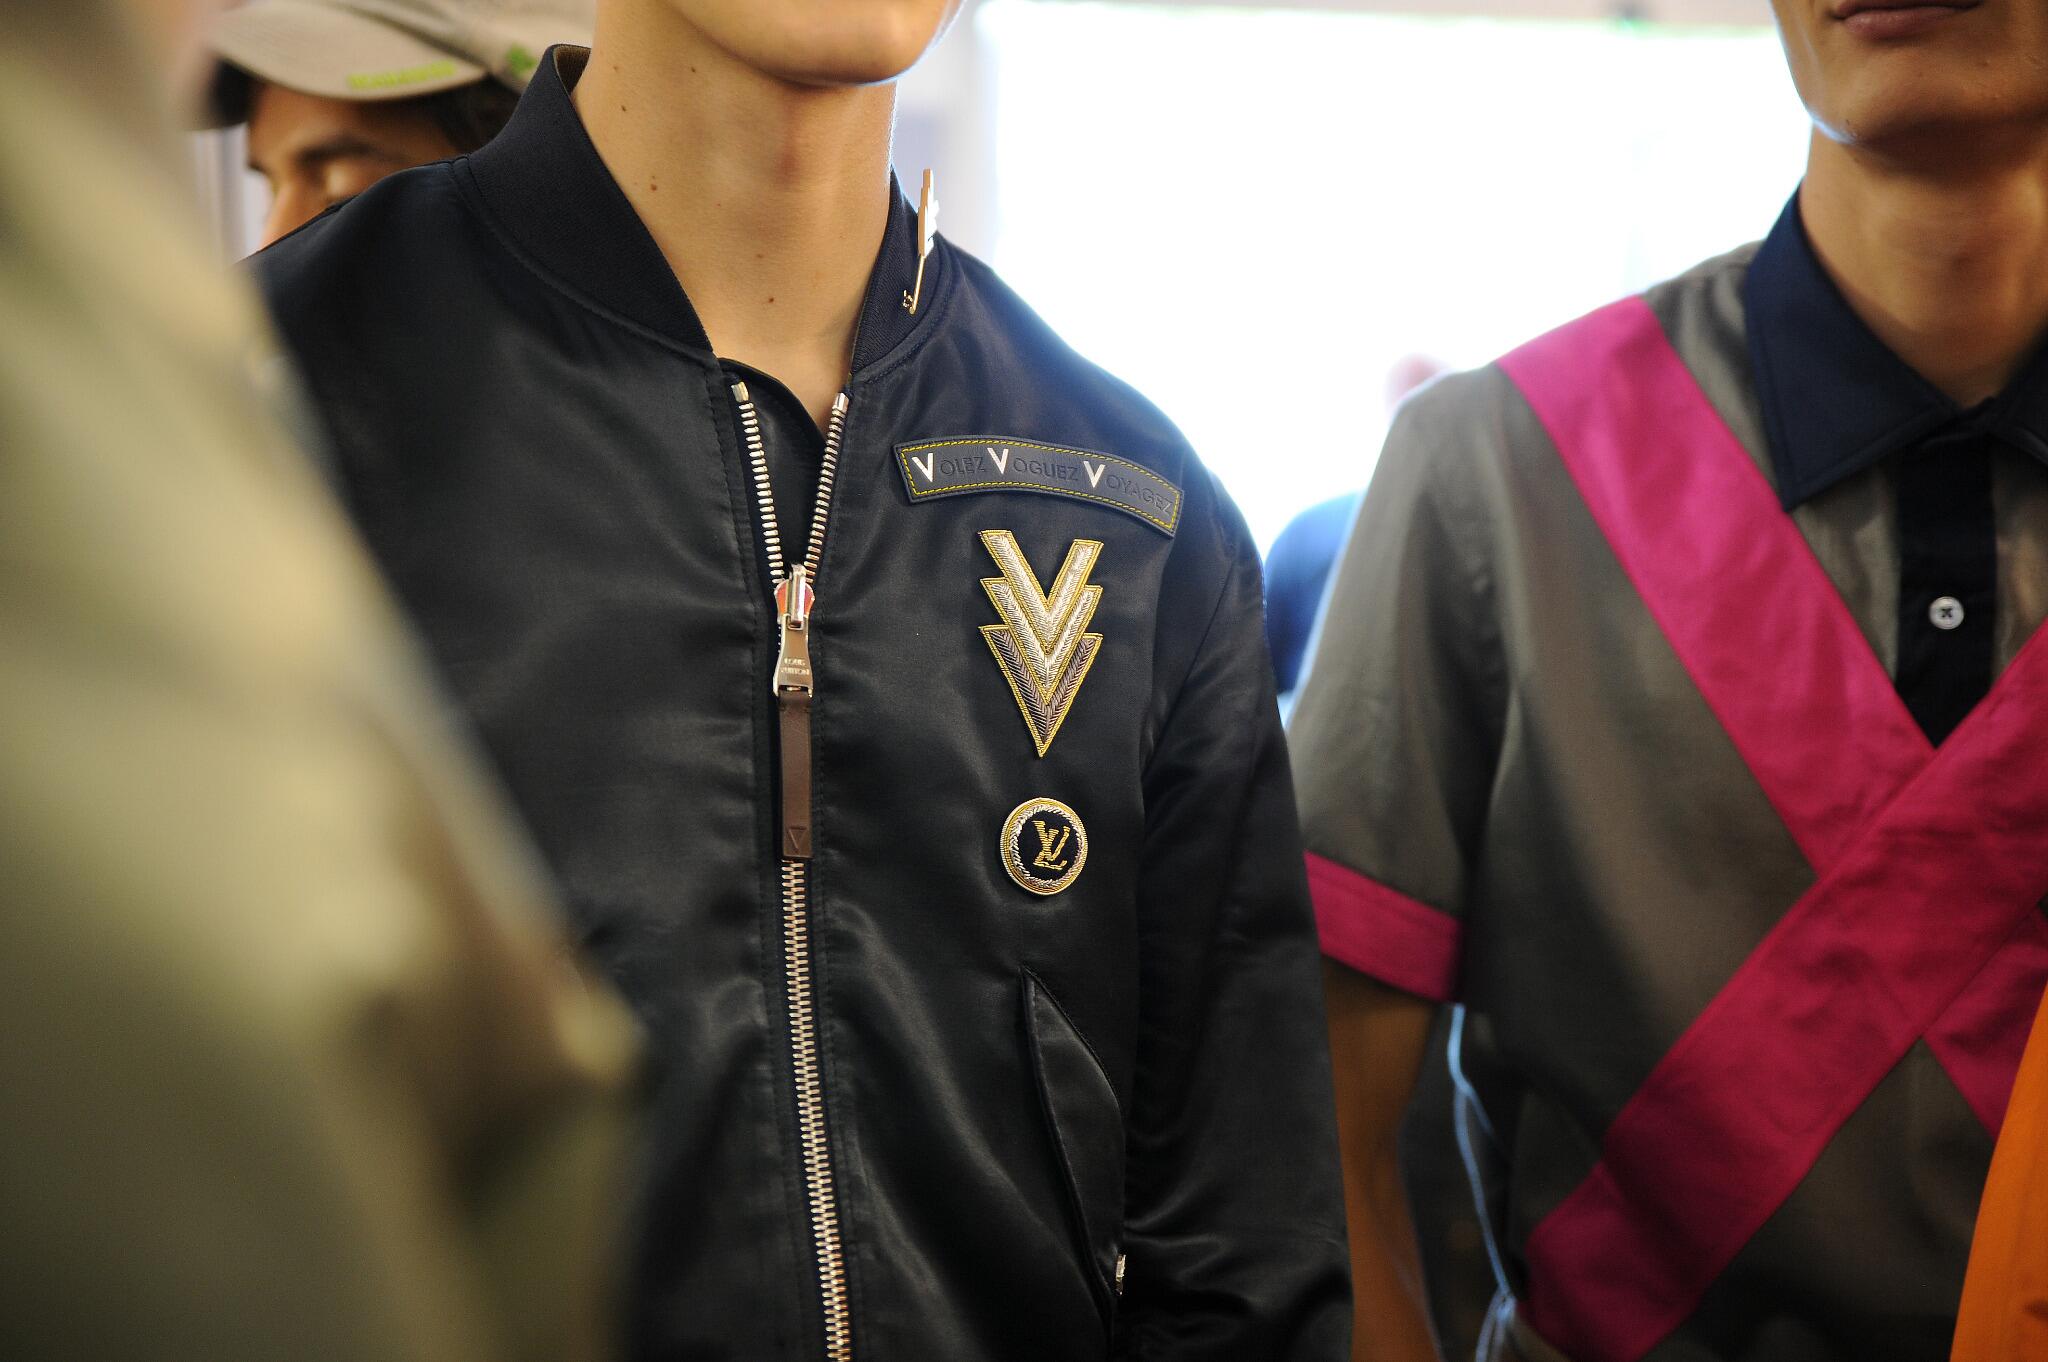 Louis Vuitton sur X : VVV emblazoned jackets at the #LouisVuitton